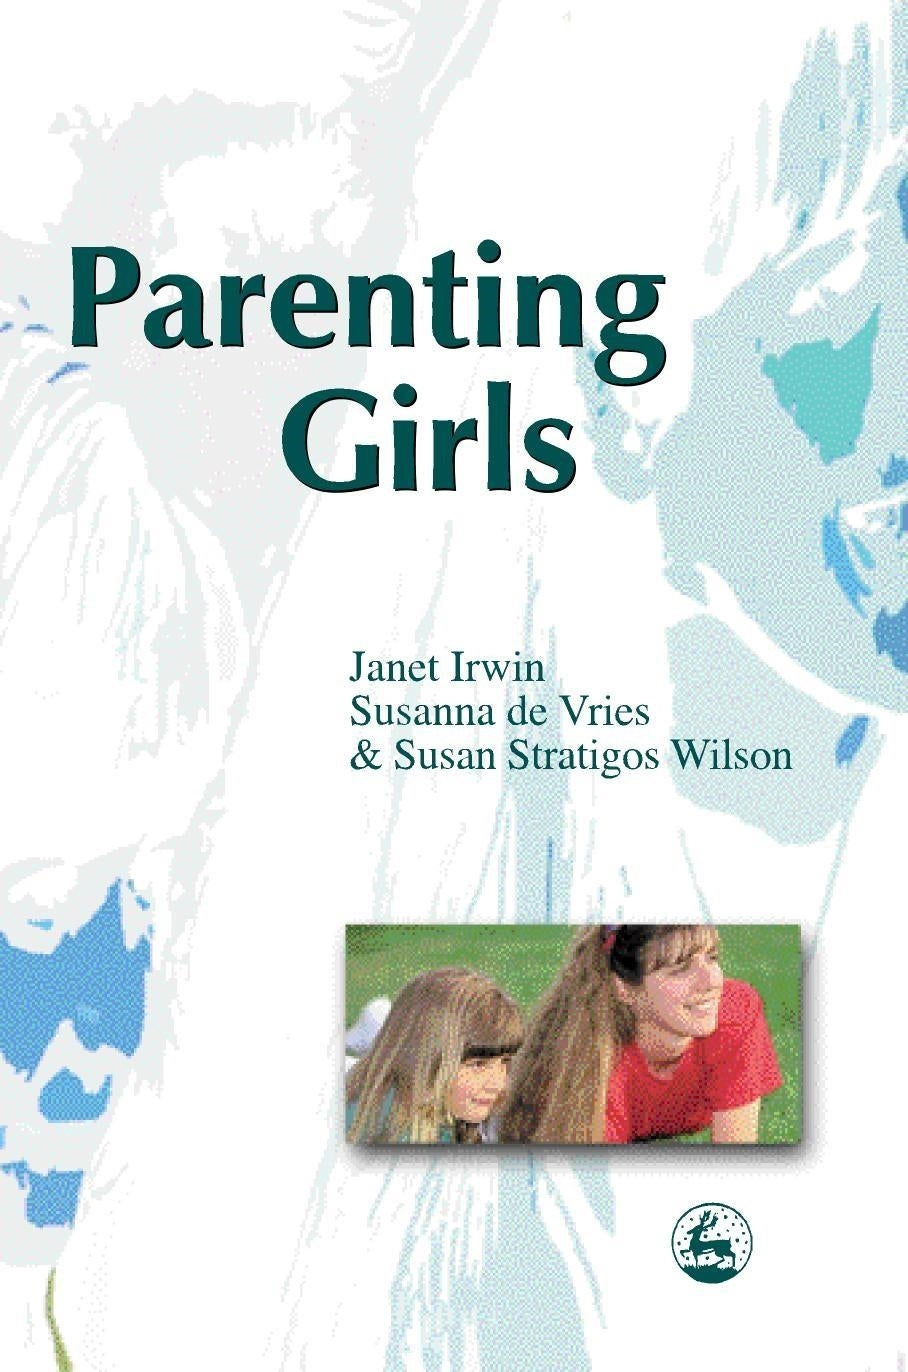 Parenting Girls by Susanna de Vries